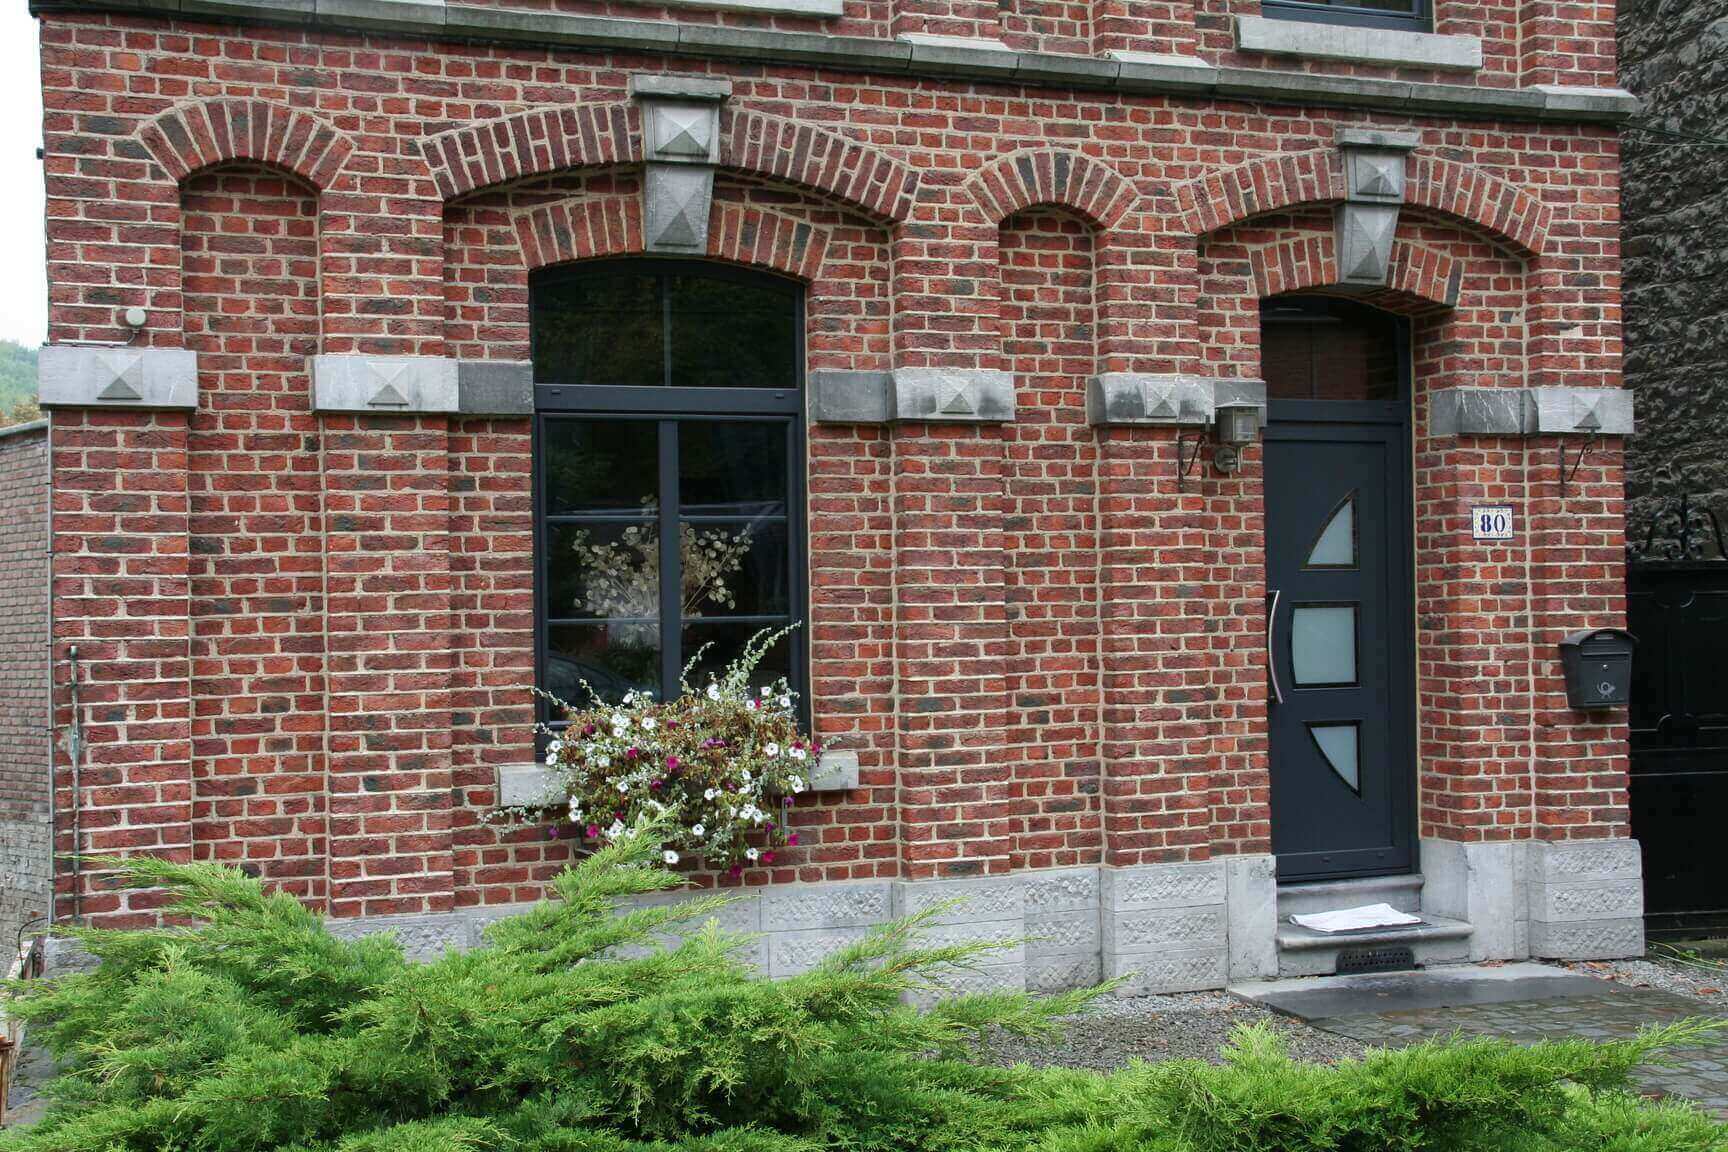 Les fenêtres en PVC sont un choix prisé et polyvalent pour les menuiseries extérieures. A découvrir a l'atelier de la fenêtre à Beauraing en Famenne.